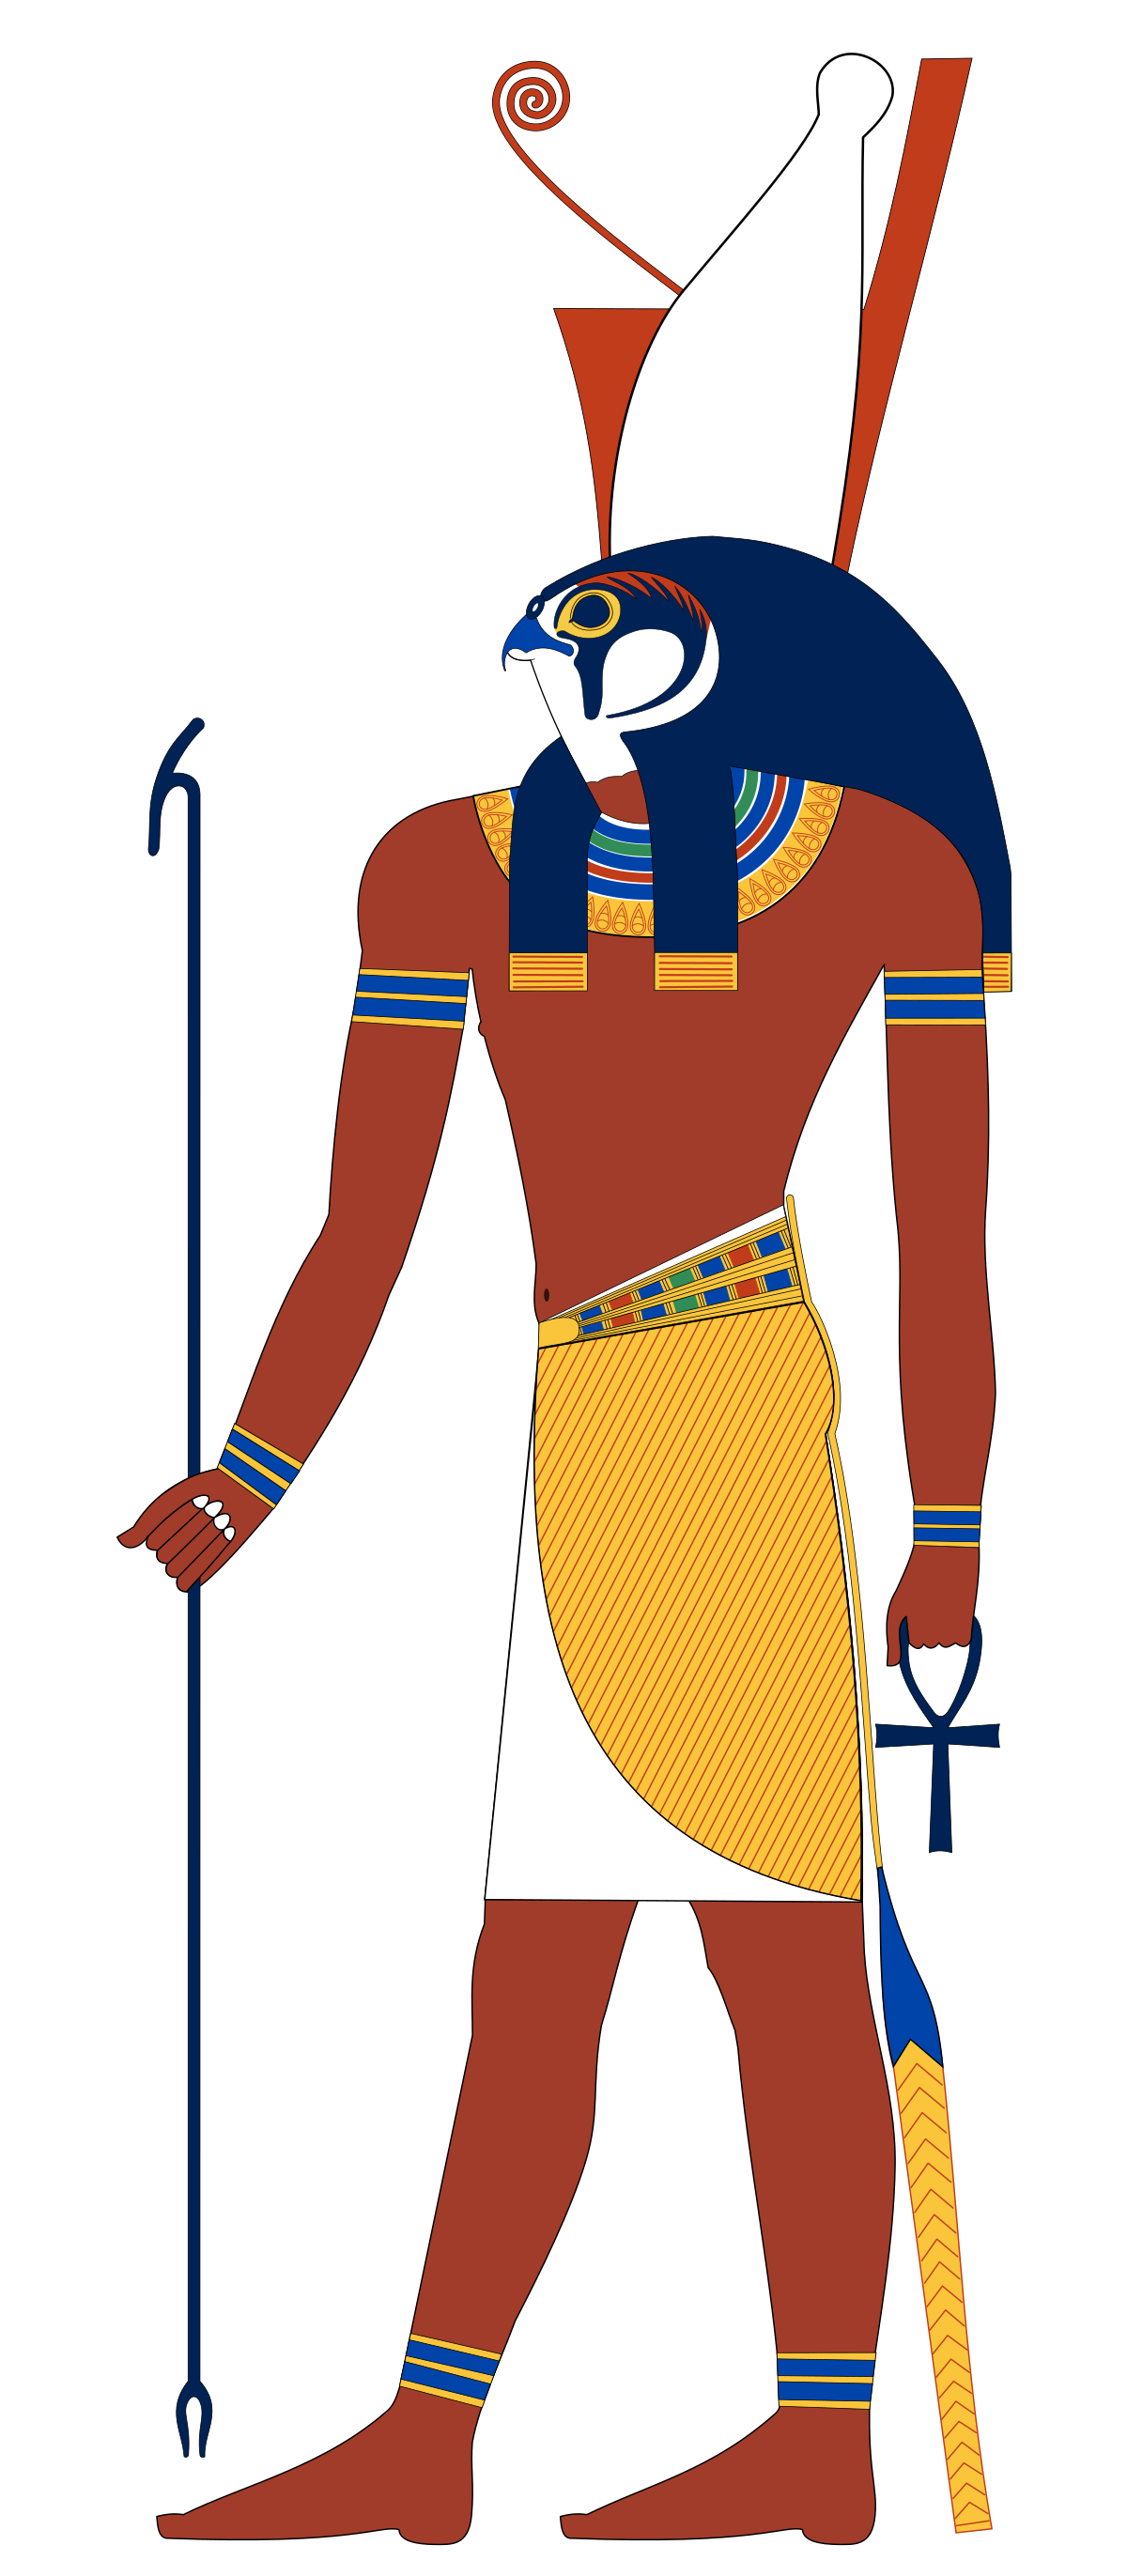 Vị thần Ai Cập là những siêu anh hùng tôn thờ của người Ai Cập cổ đại, được cho là có khả năng kiểm soát các yếu tố tự nhiên và nhân bản cuộc sống. Hãy chiêm ngưỡng hình ảnh đẹp của những vị thần trong viễn cảnh Ai Cập cổ đại.